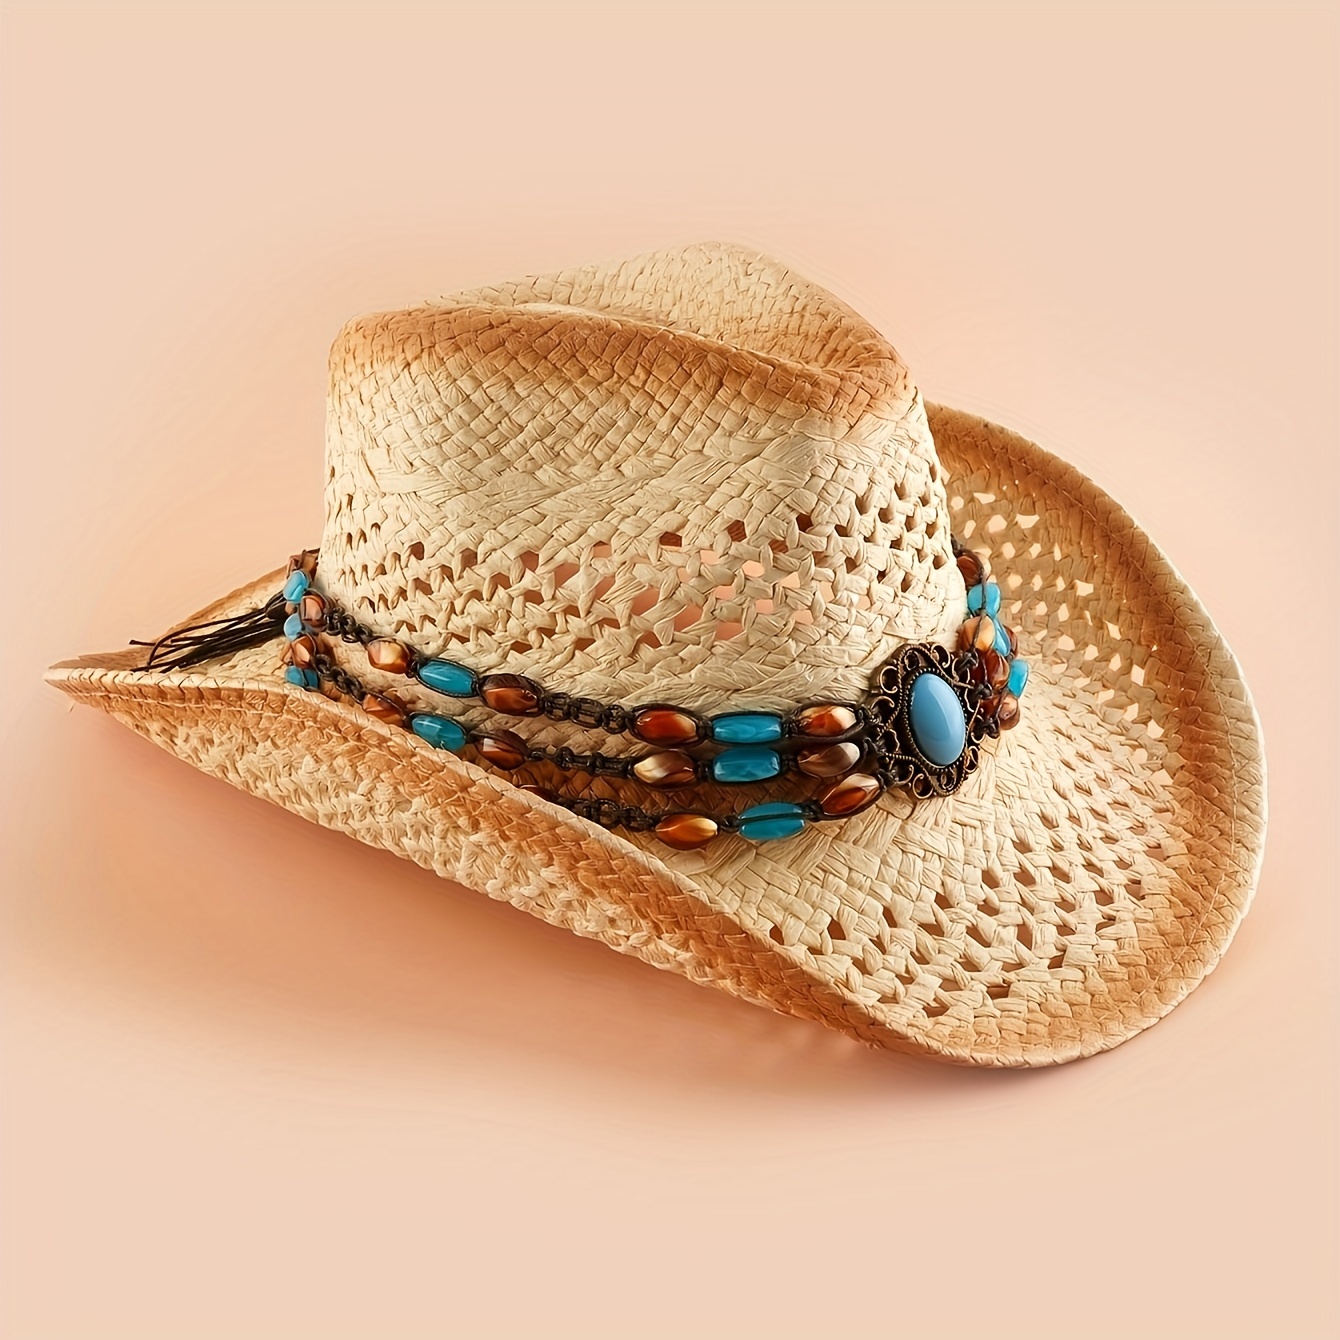 Sombrero de vaquero niños sombrero de vaquero occidental niño niño sombrero  rodeo sombrero vaquera sombrero country ranchero sombrero vaquero  cumpleaños marrón sombrero de vaquero -  México